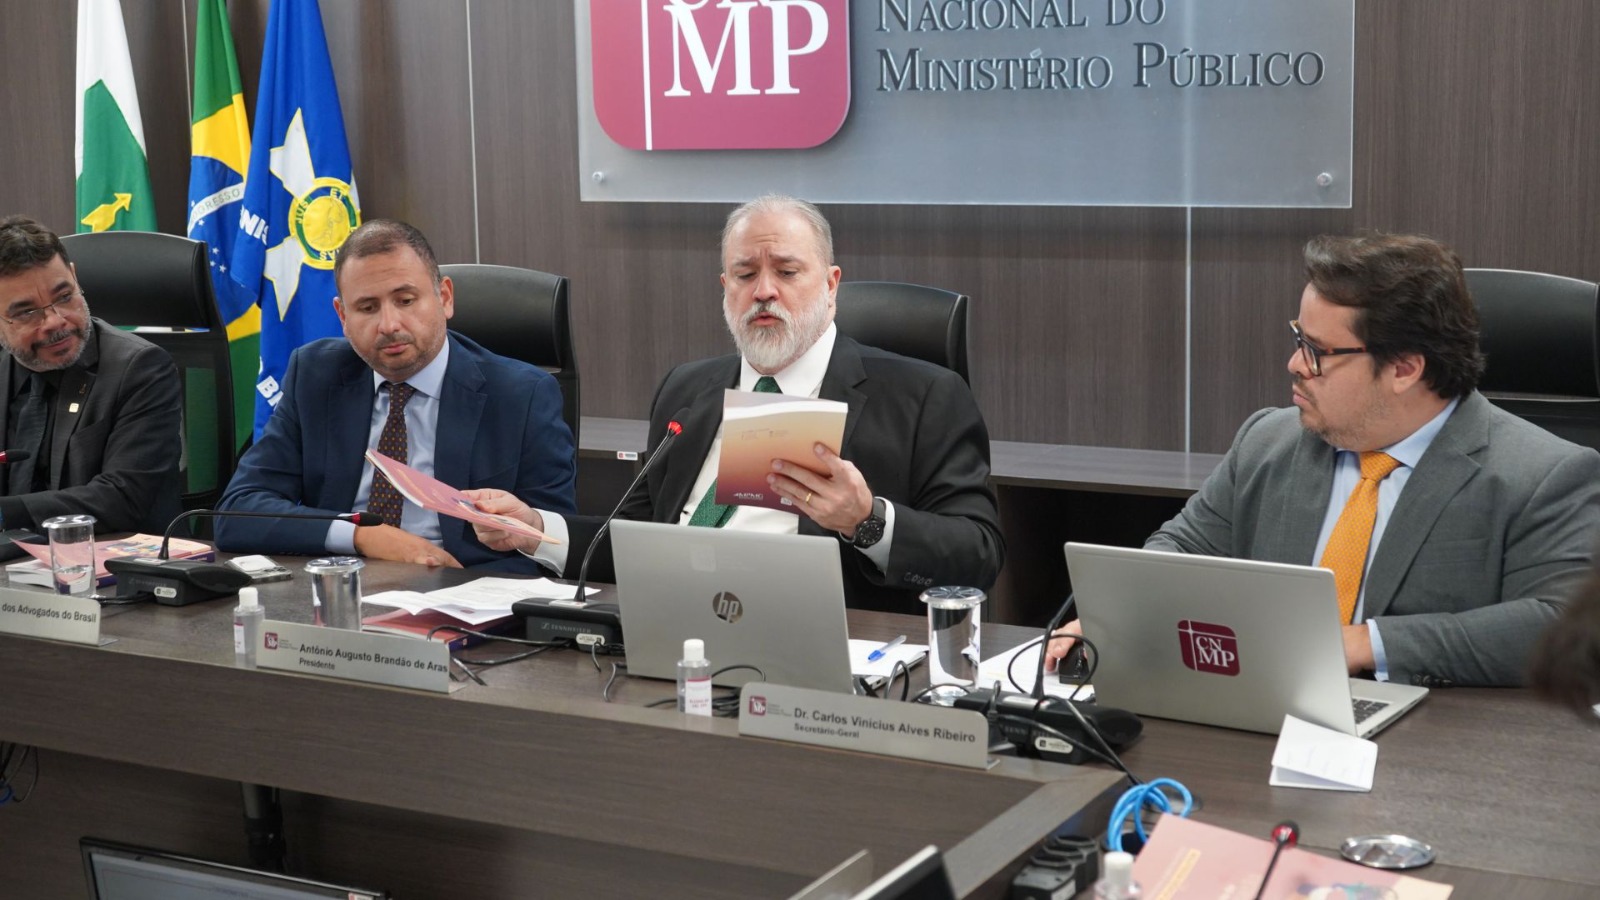 Direito Civil Contemporâneo - Em 3 de setembro de 2020, o Conselho Nacional  do Ministério Público editou a Portaria CNMP-PRESI n. 137, que dispõe sobre  os serviços de protocolo, expedição e mensageria